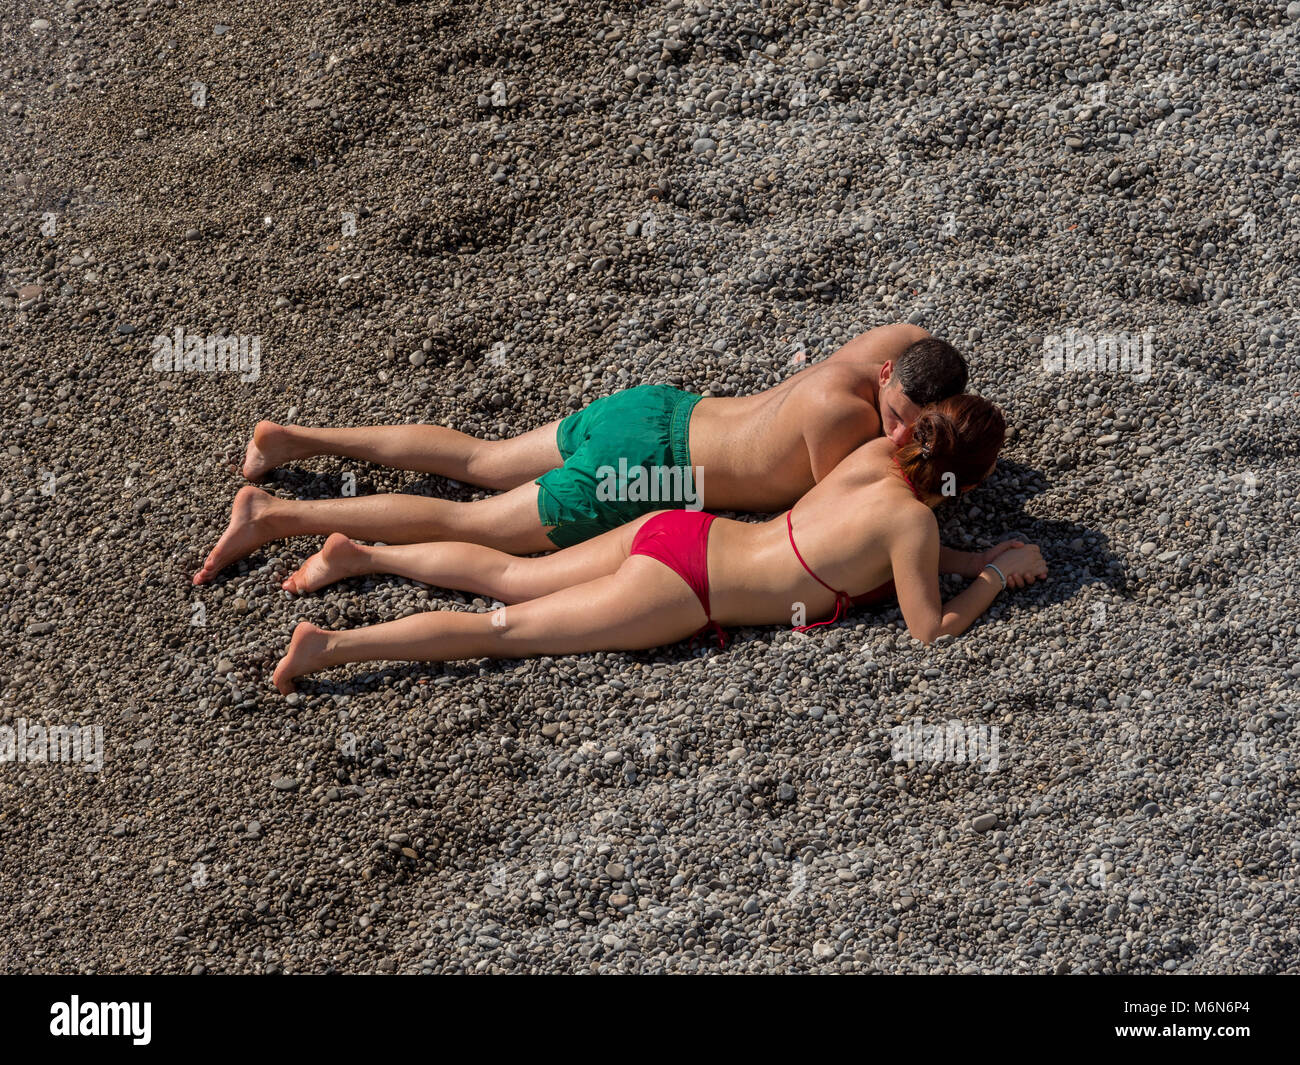 Jeune couple sunbathing on beach Banque D'Images